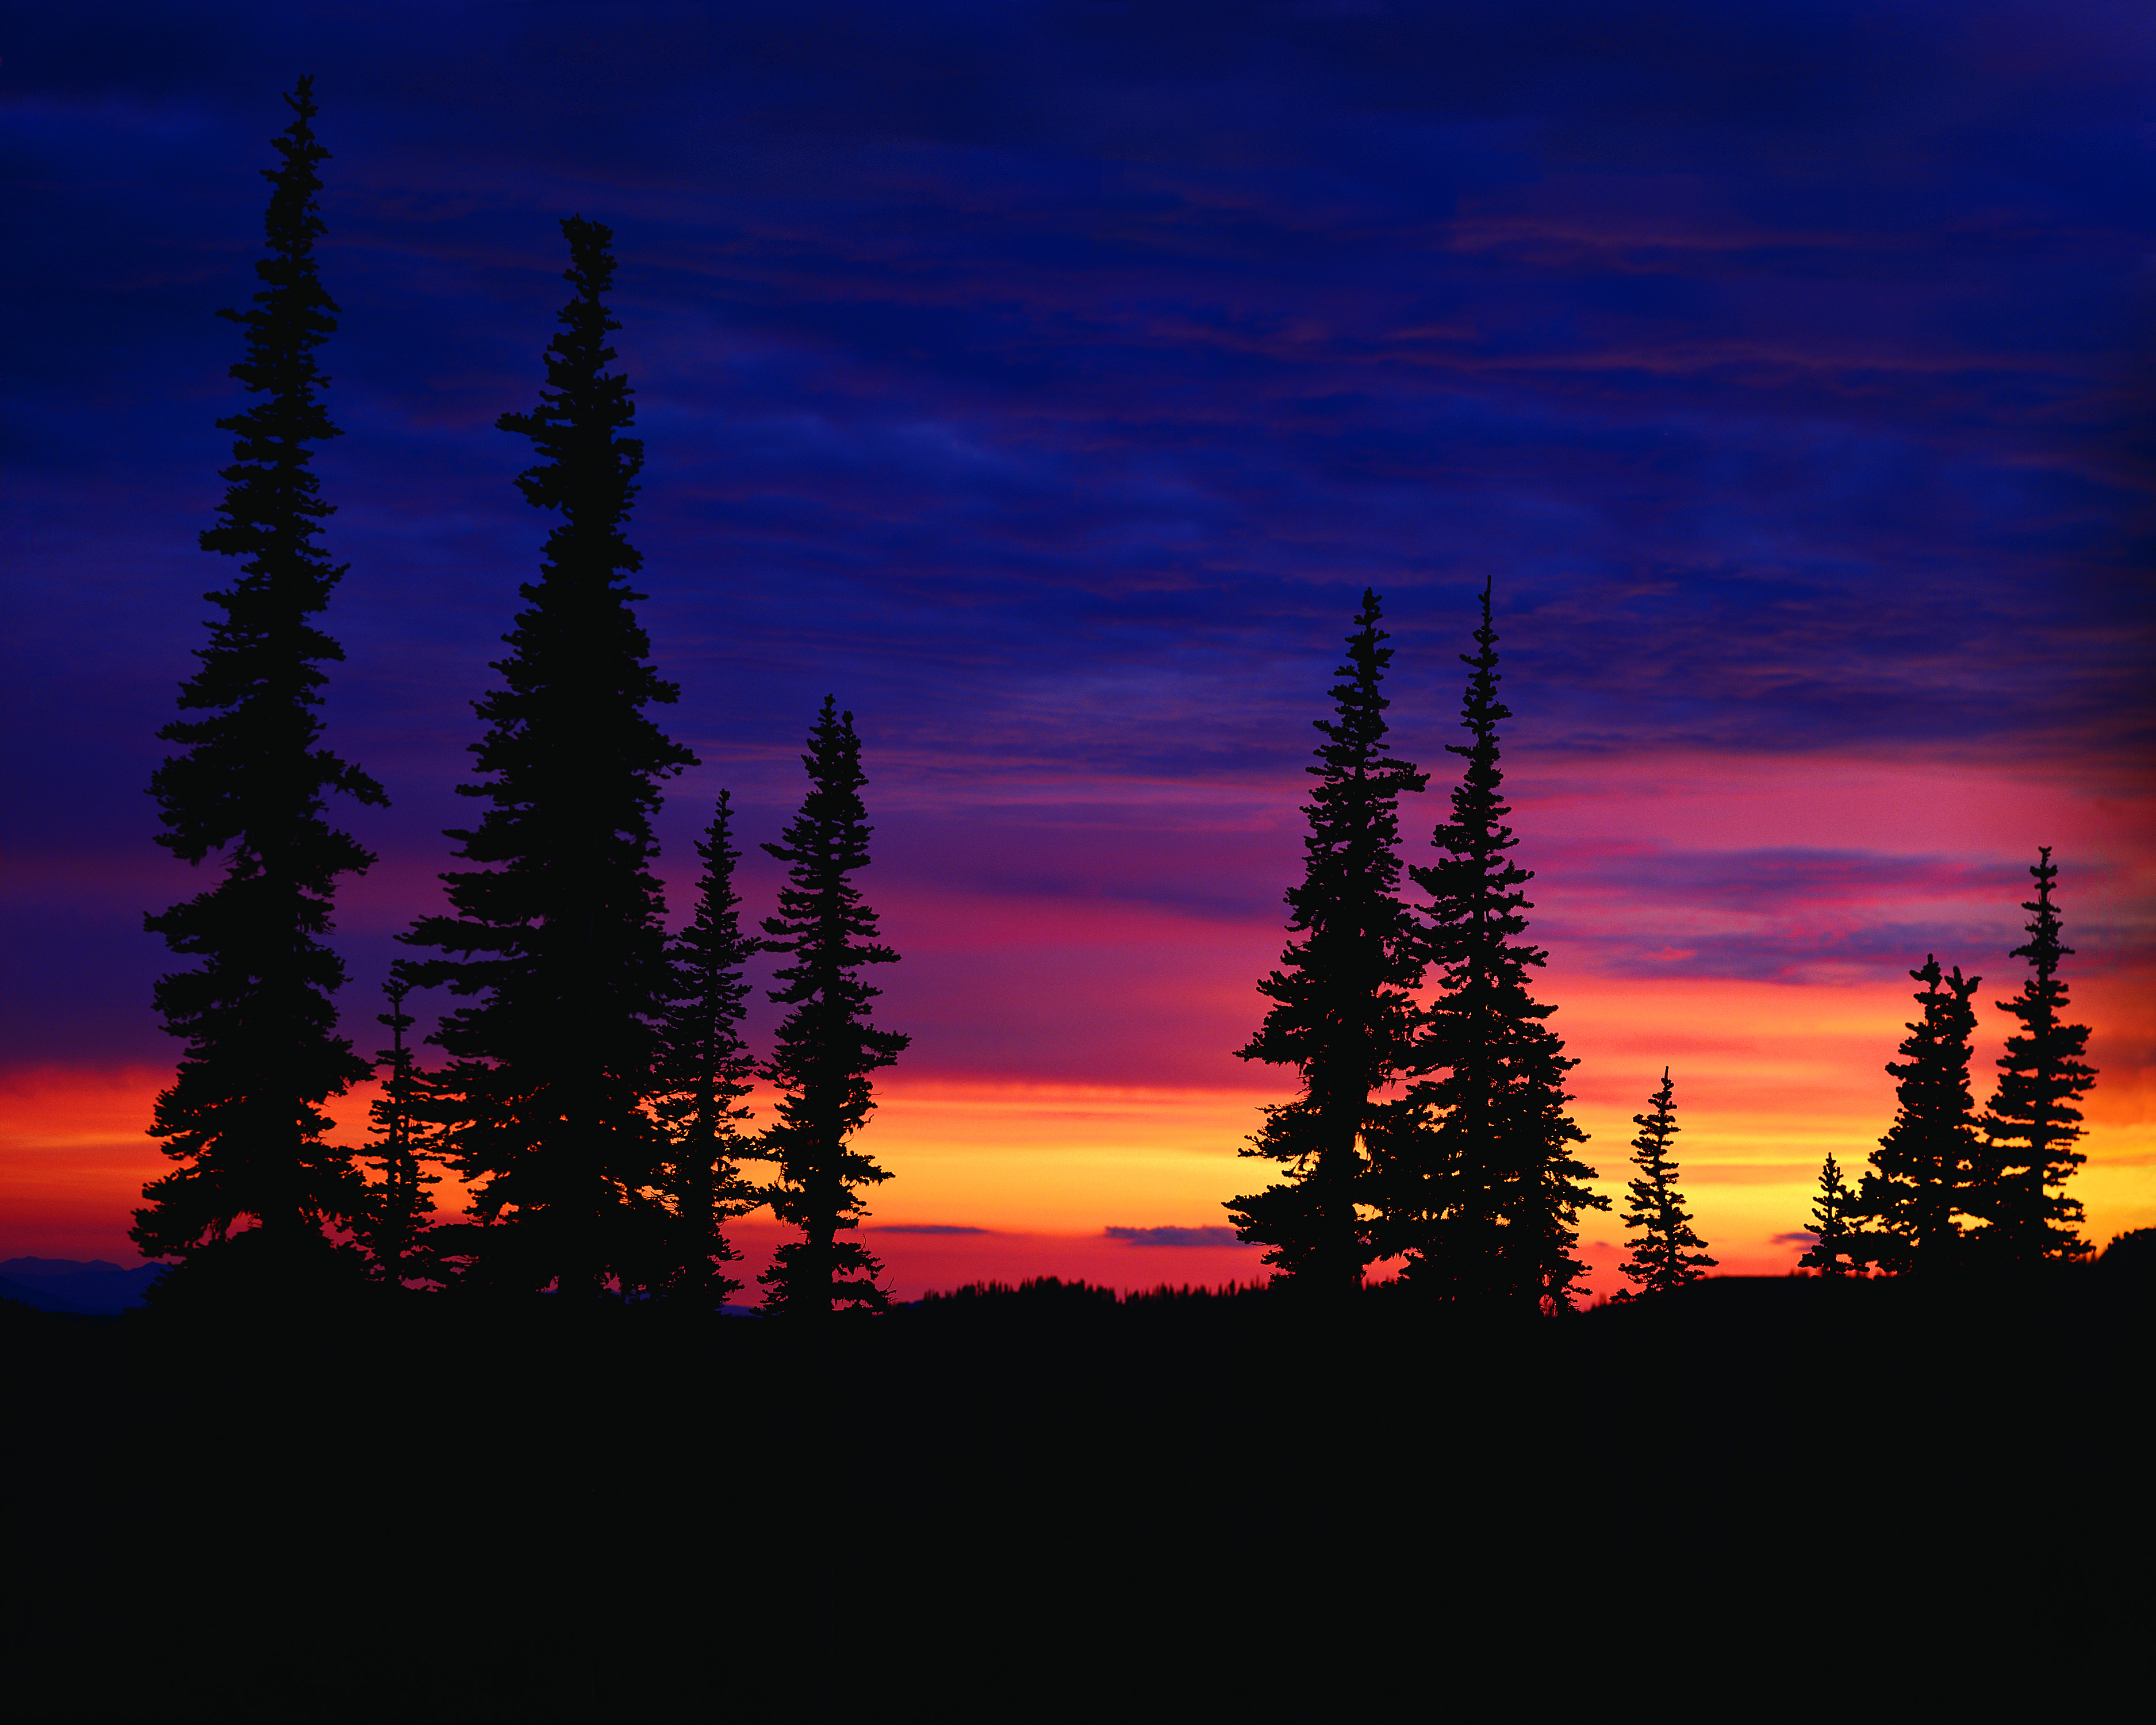 sunset, landscapes, trees - desktop wallpaper